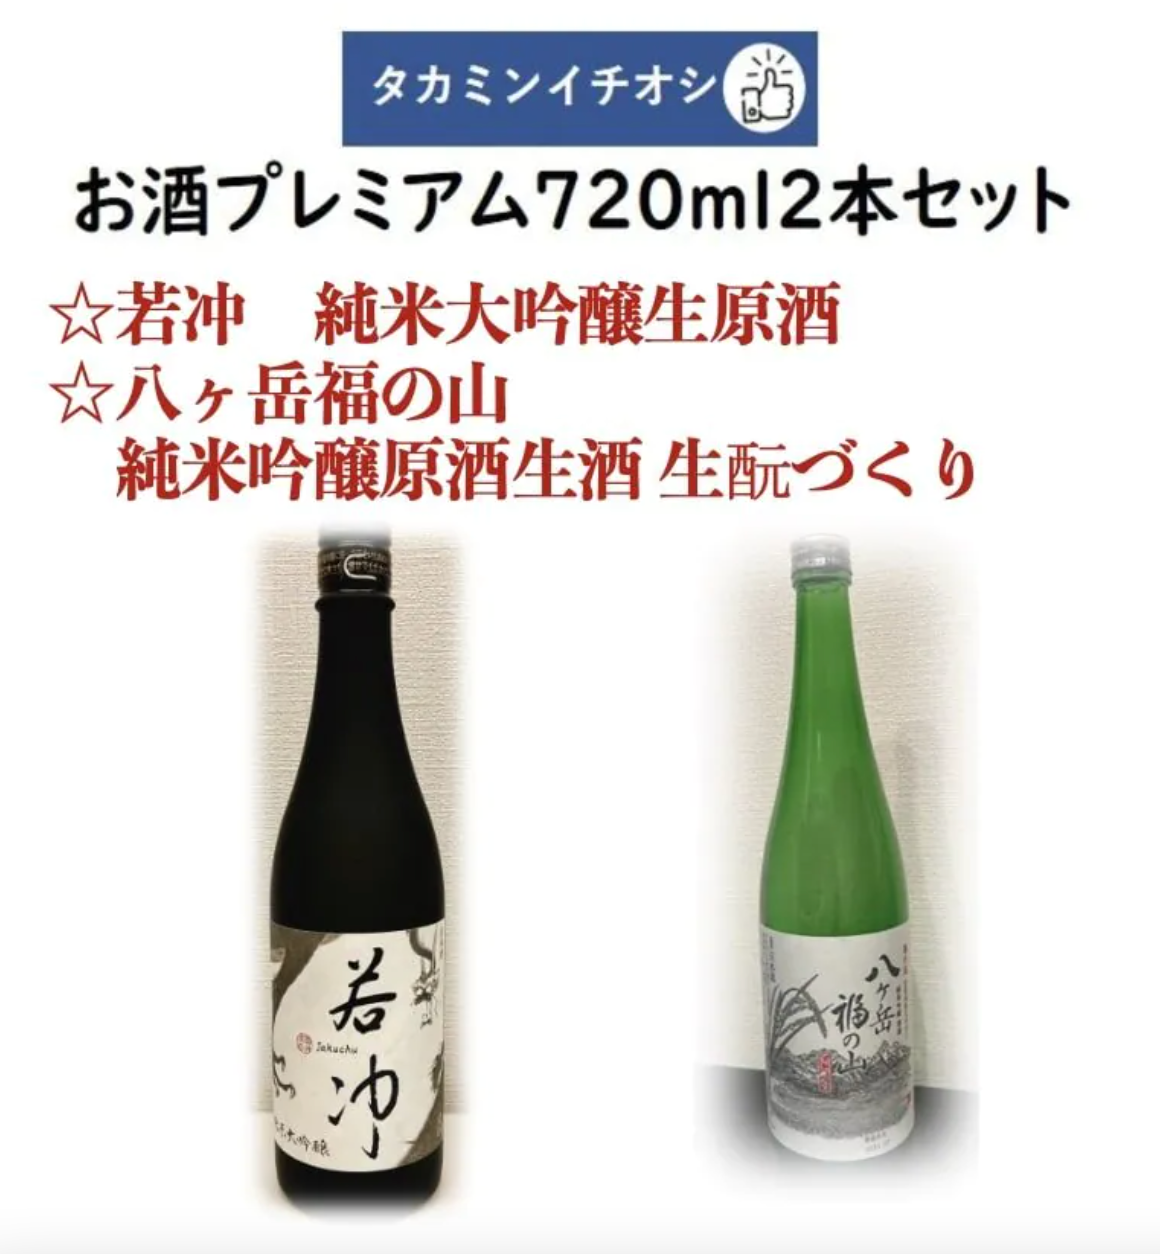 Takamin Recommended Sake Premium 720ml 2 bottles set Jakuchu Junmai Daiginjo Sake Raw Sake & Yatsugatake Fukuyama Junmai Ginjo Sake Raw Sake Making